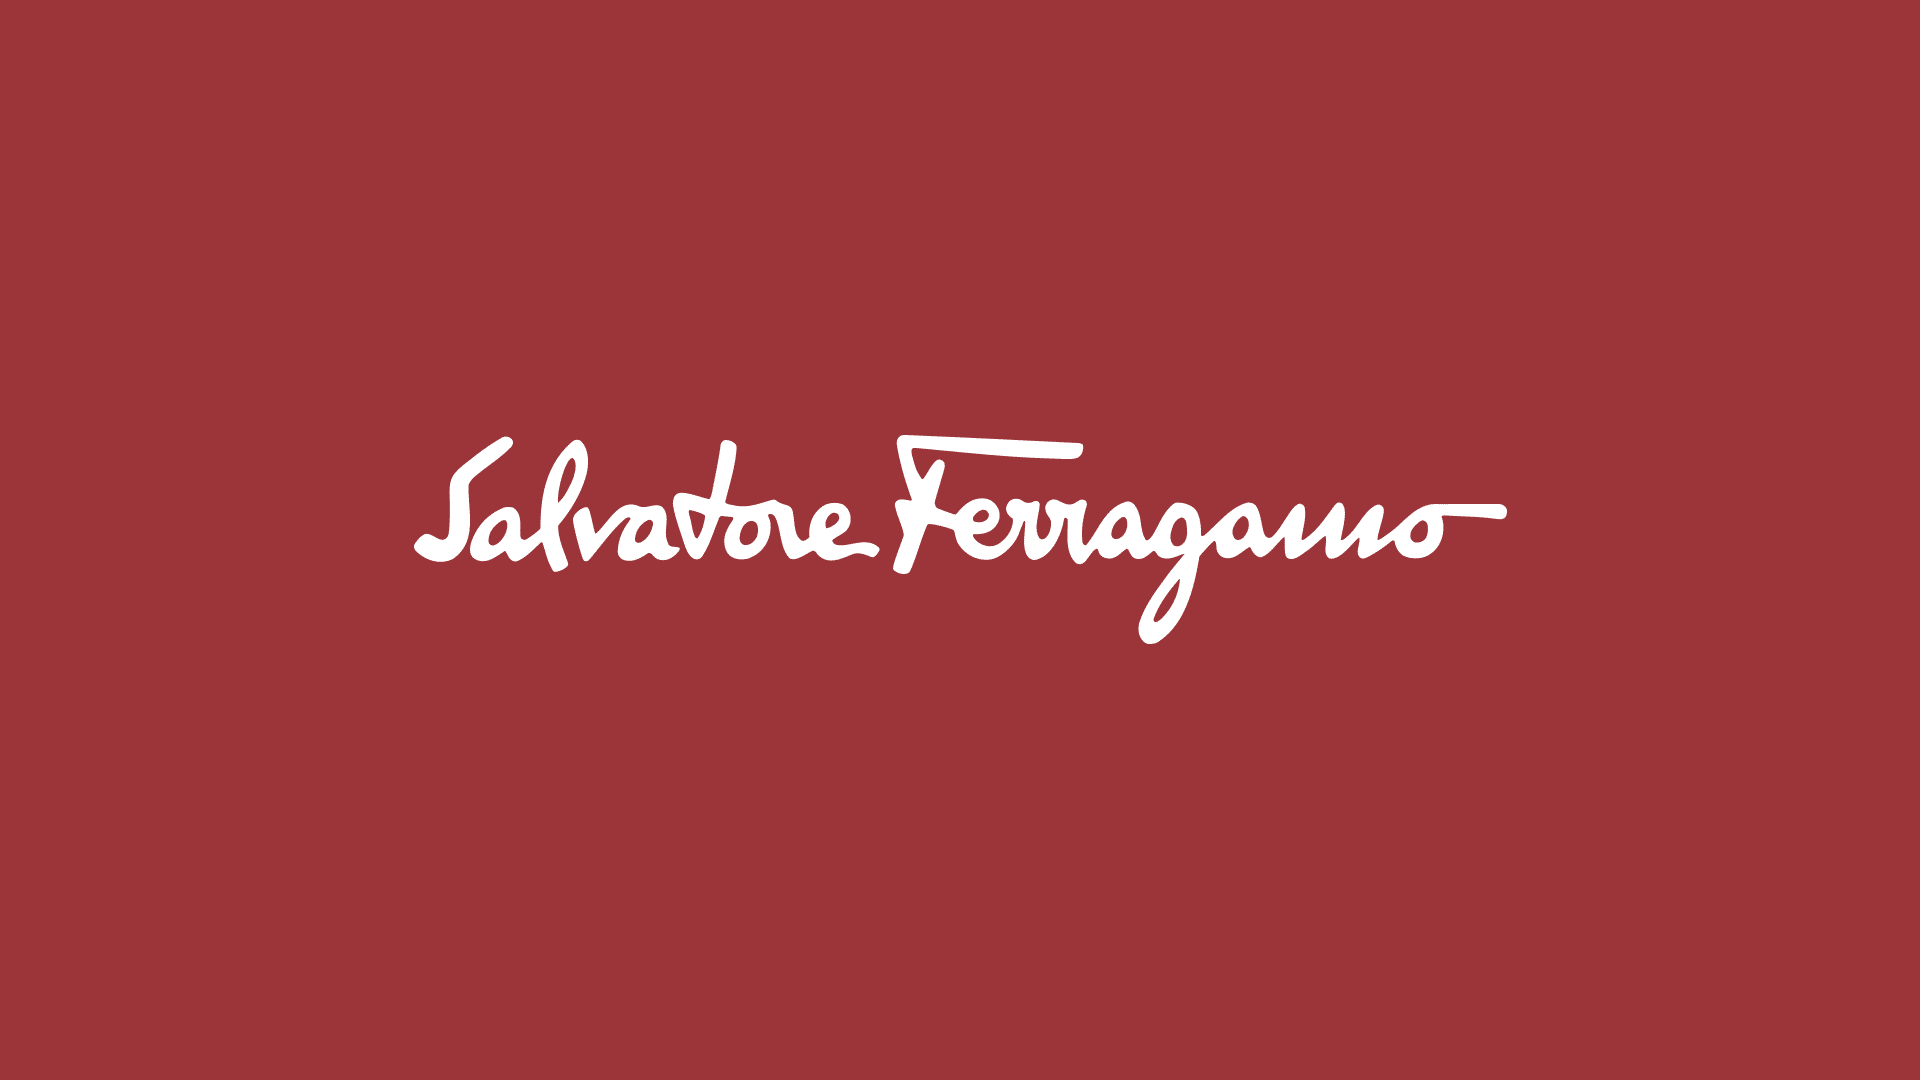 義大利奢侈品Ferragamo 推出精心設計的「SF」新LOGO 2